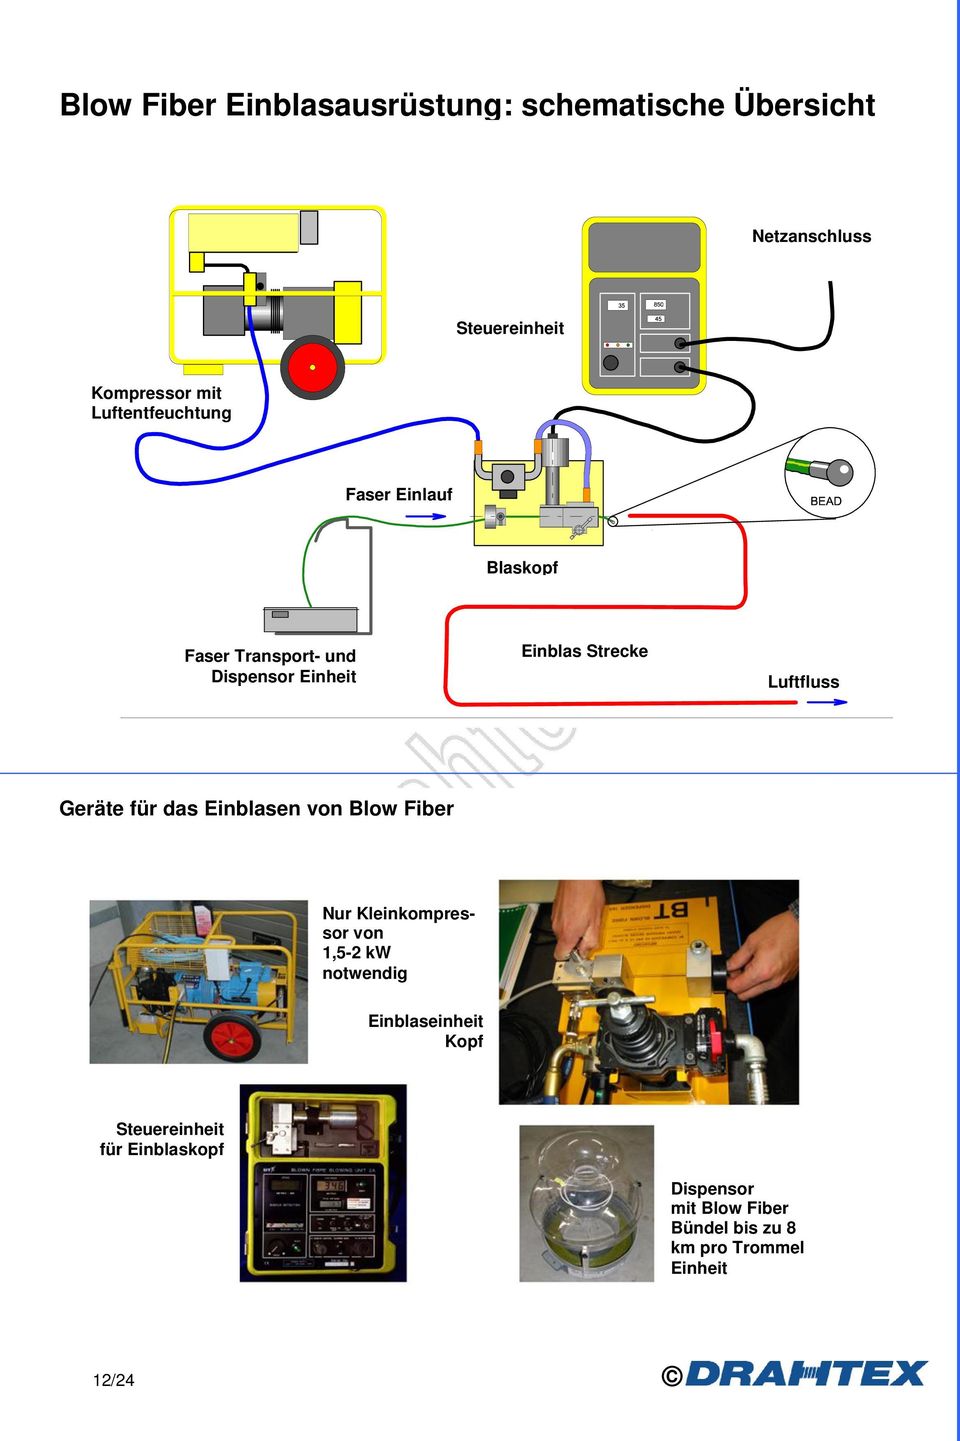 Geräte für das Einblasen von Blow Fiber Fibre unit blowing equipment Nur Kleinkompressor von 1,5-2 kw